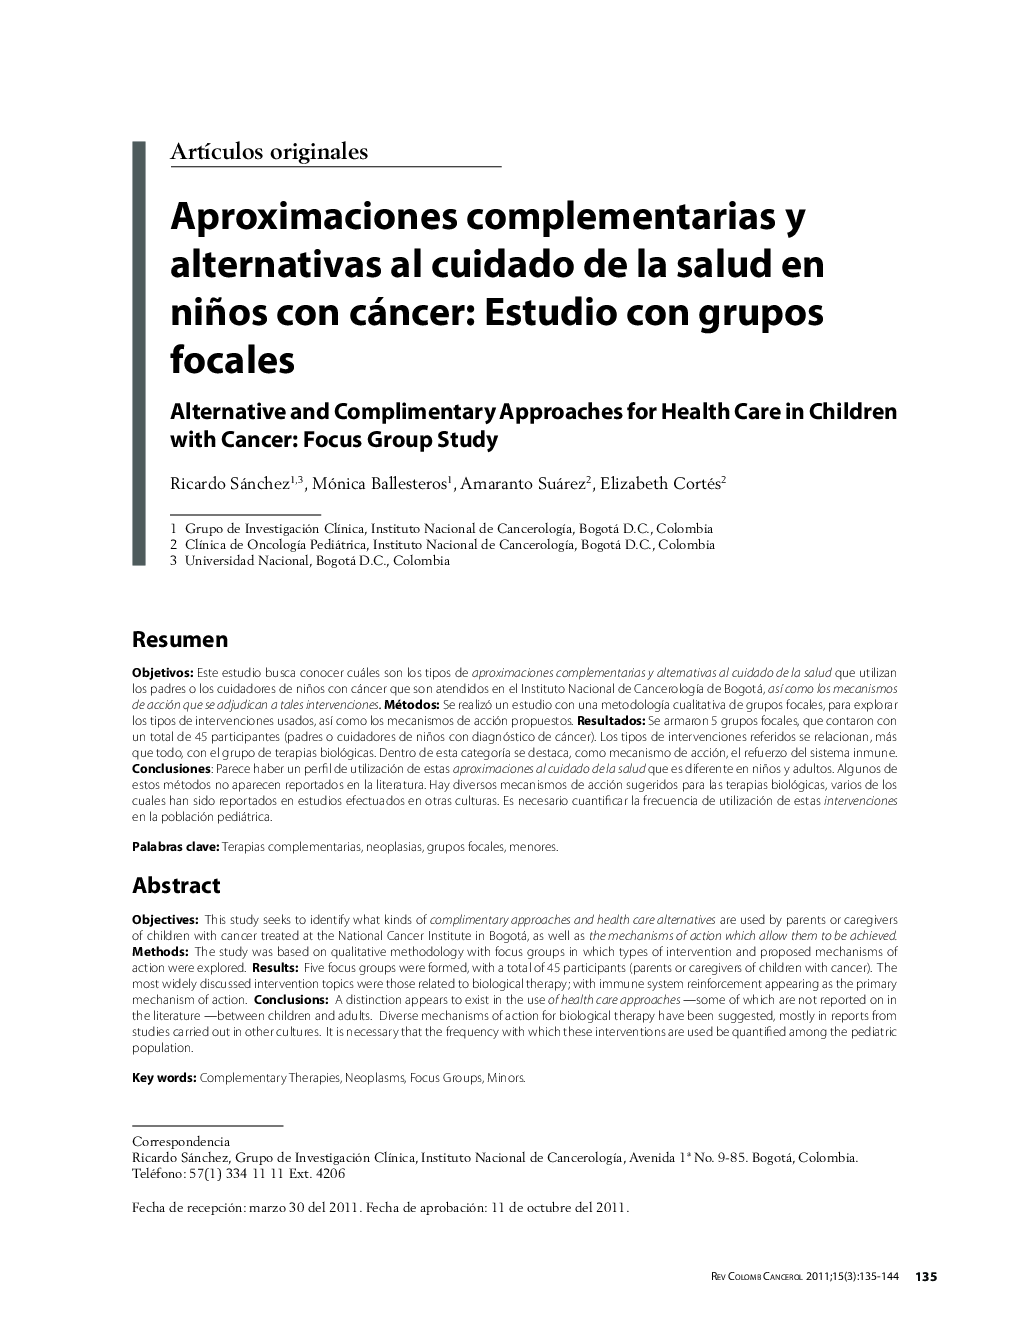 Aproximaciones complementarias y alternativas al cuidado de la salud en niños con cáncer: Estudio con grupos focales